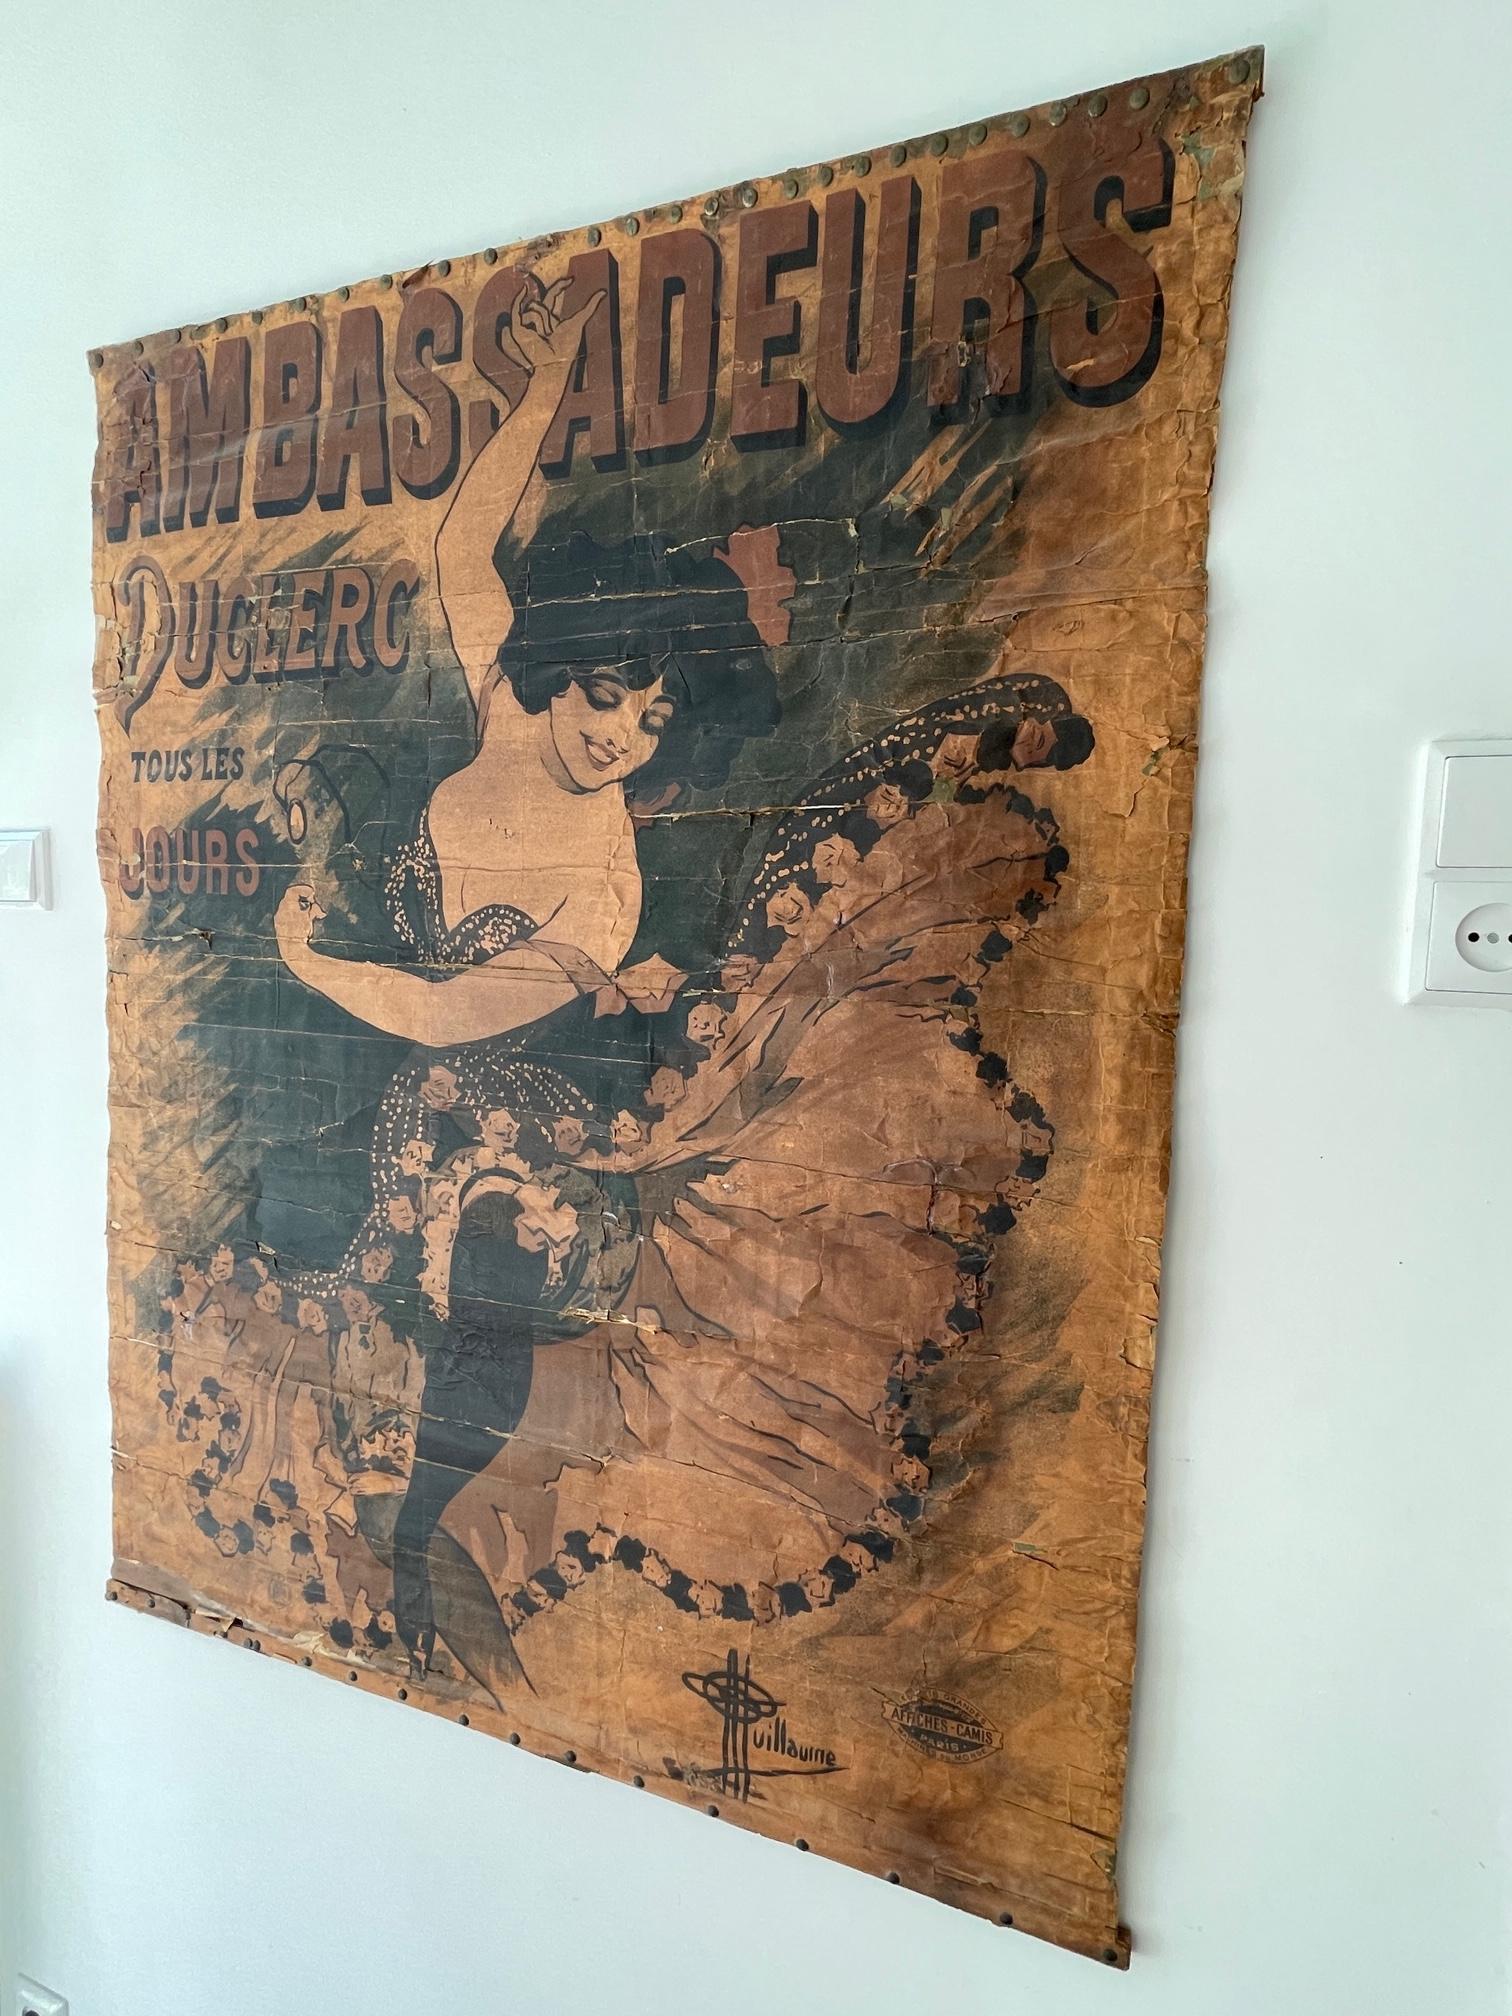 1894 Antique affiche / poster Ambassadeurs Duclerc tous les jours - Guillaume en vente 3